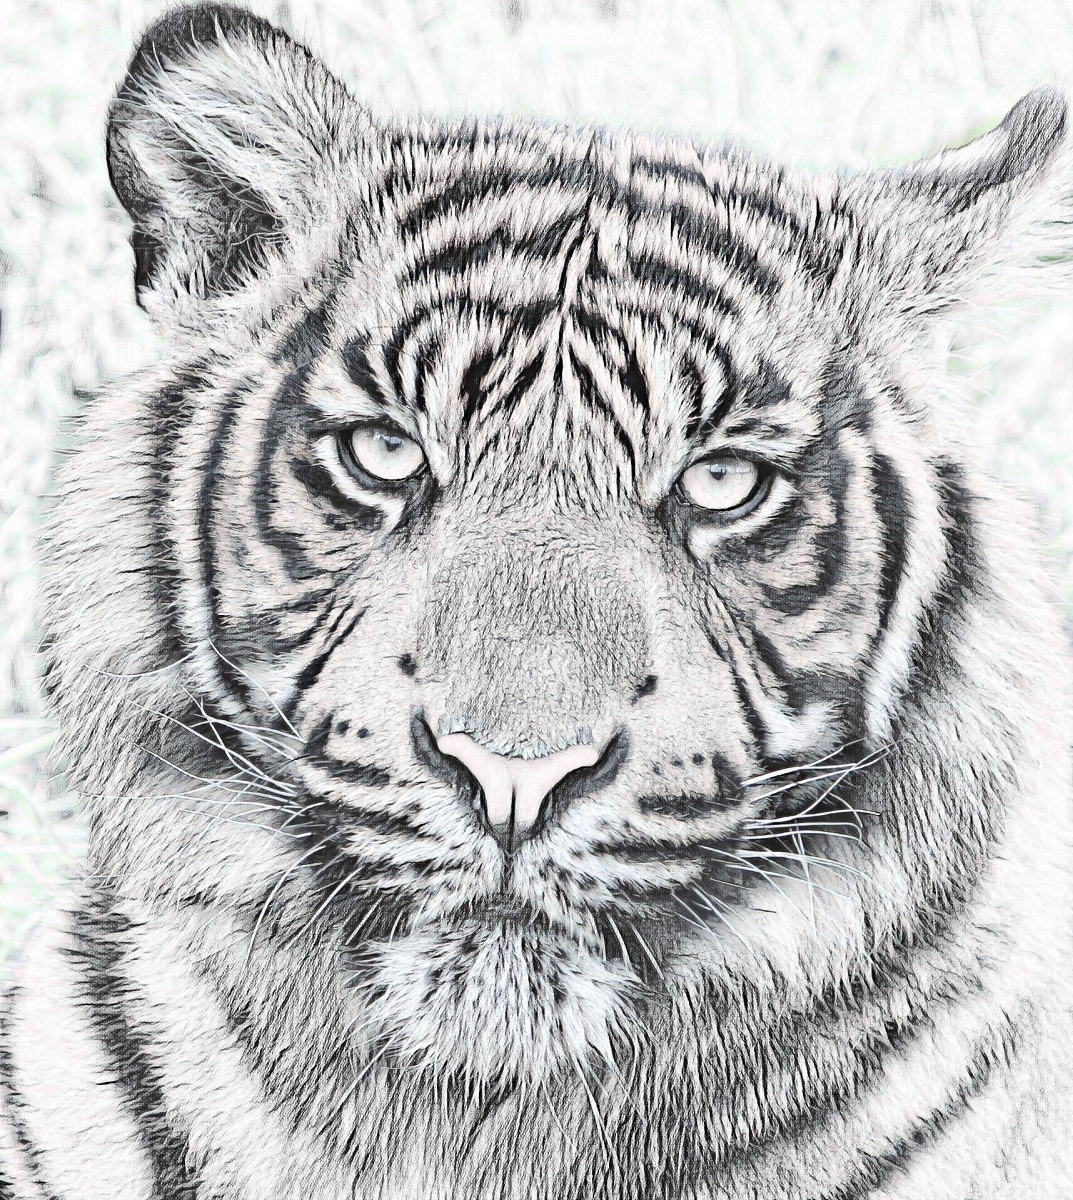 Tiger_0911